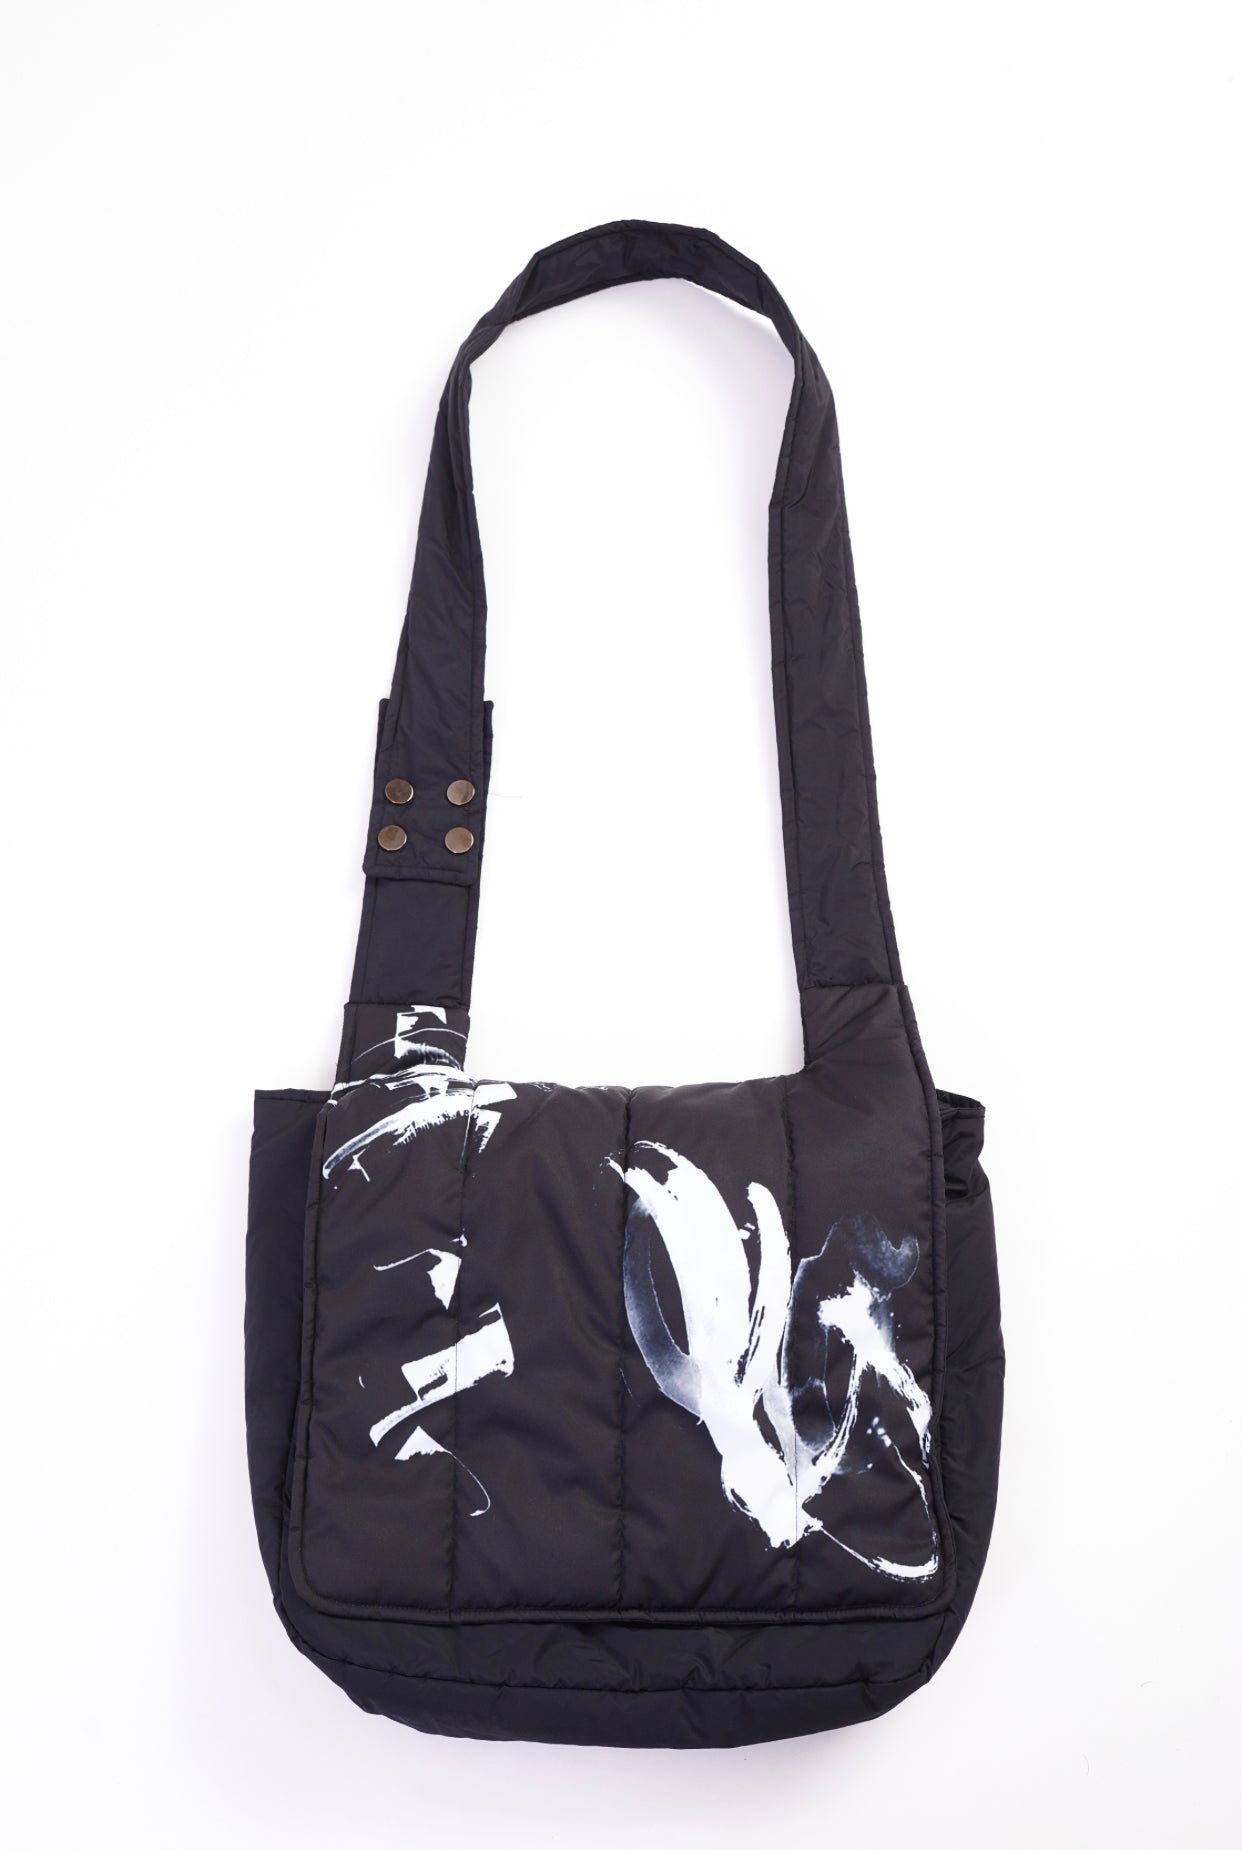 Print Shoulder Length Bag in Black and White